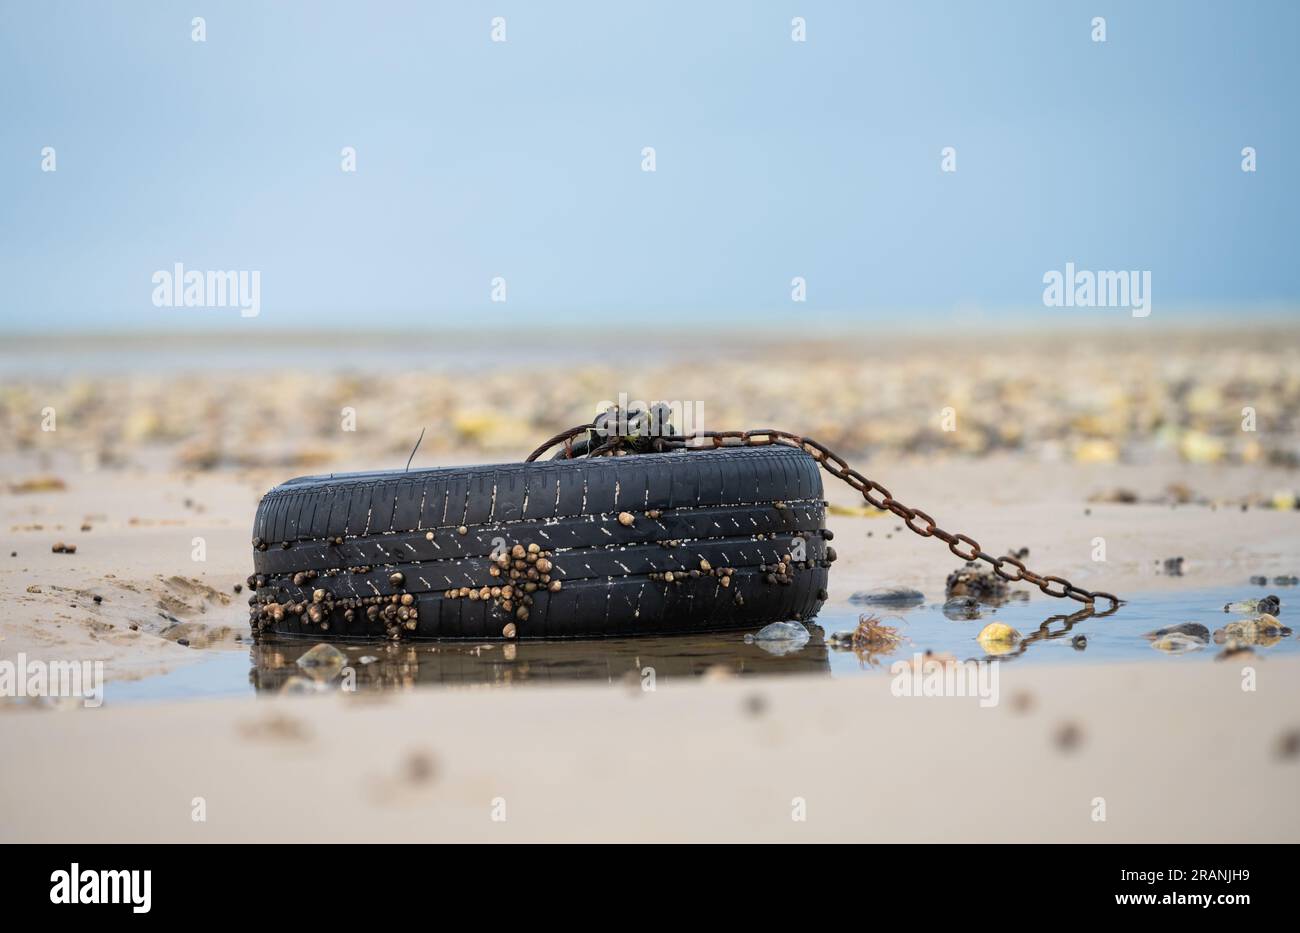 Ruota e pneumatico dell'auto appoggiati sulla sabbia su una spiaggia con bassa marea, con una catena attaccata a un galleggiante o a una boa. Rifiuti da spiaggia o rifiuti. Foto Stock